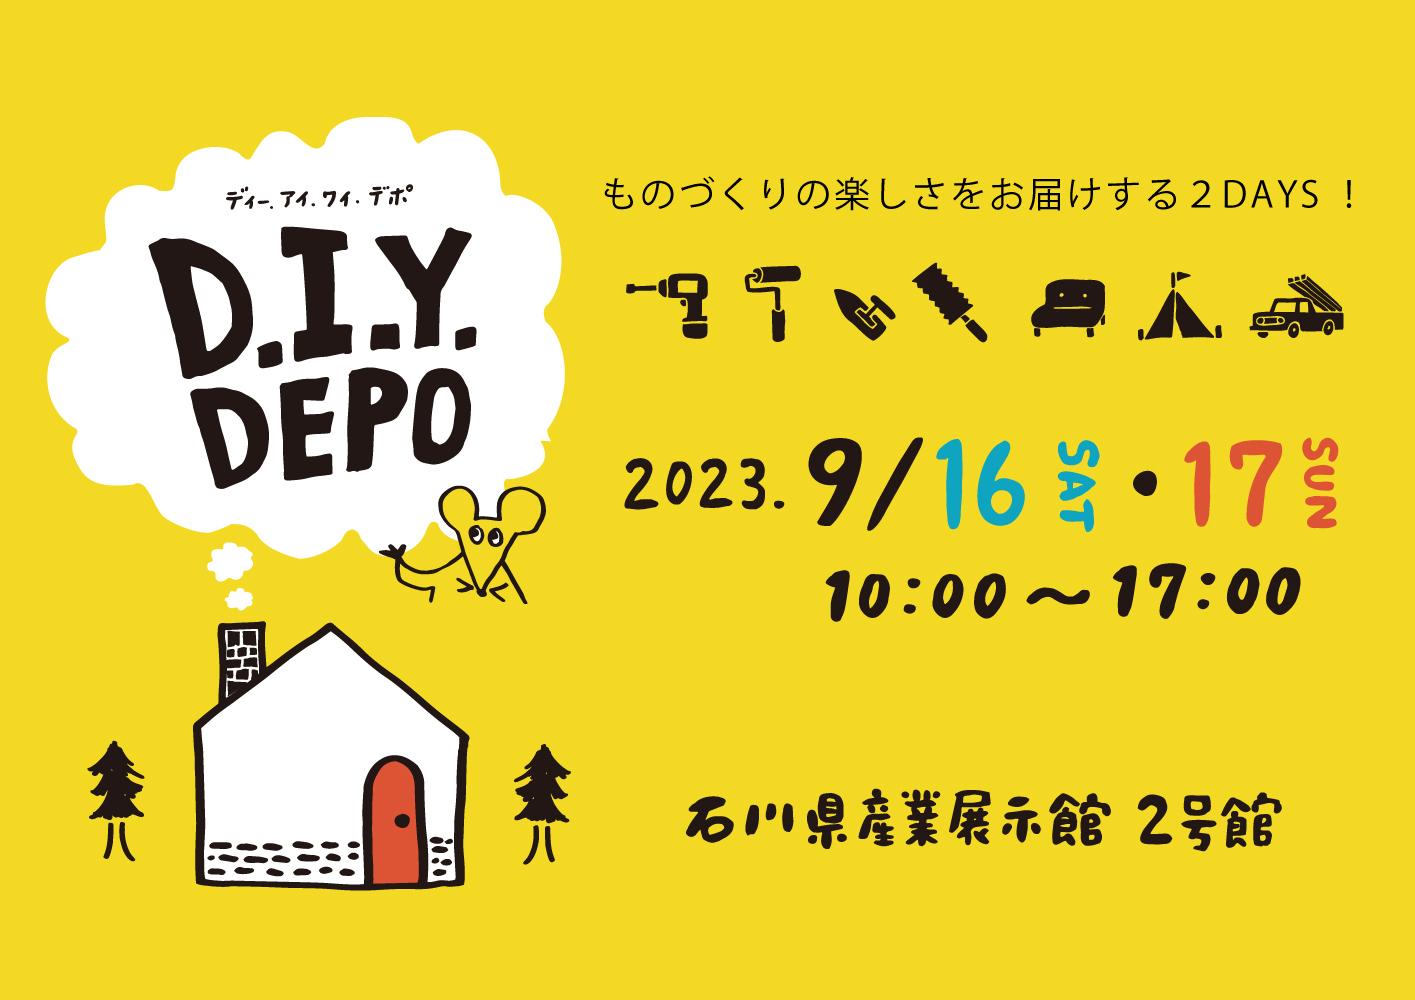 9/16(土)・17(日) ものづくり楽しさを体験できる2日間「D.I.Y. DEPO」開催!!【産展2号館】